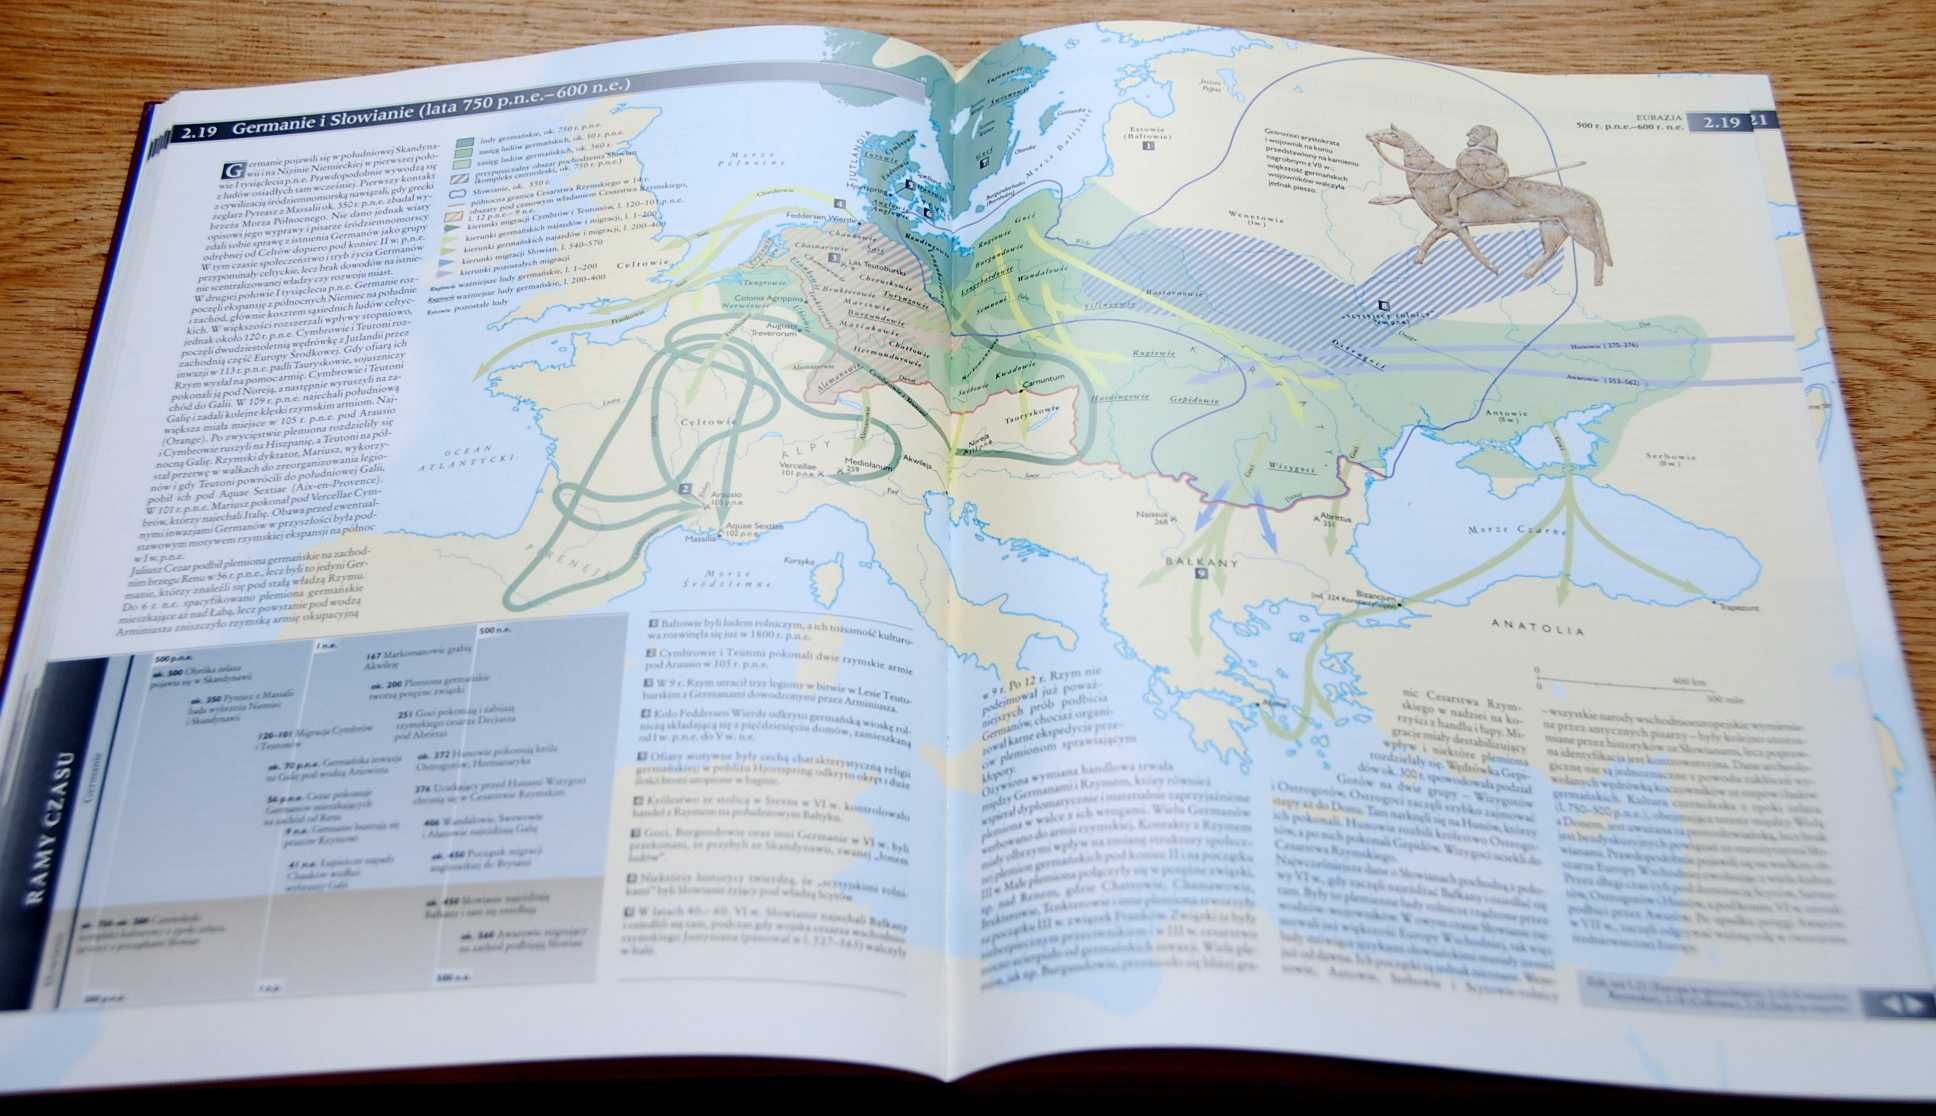 Atlas dziejów świata John Haywood bardzo dobry stan!